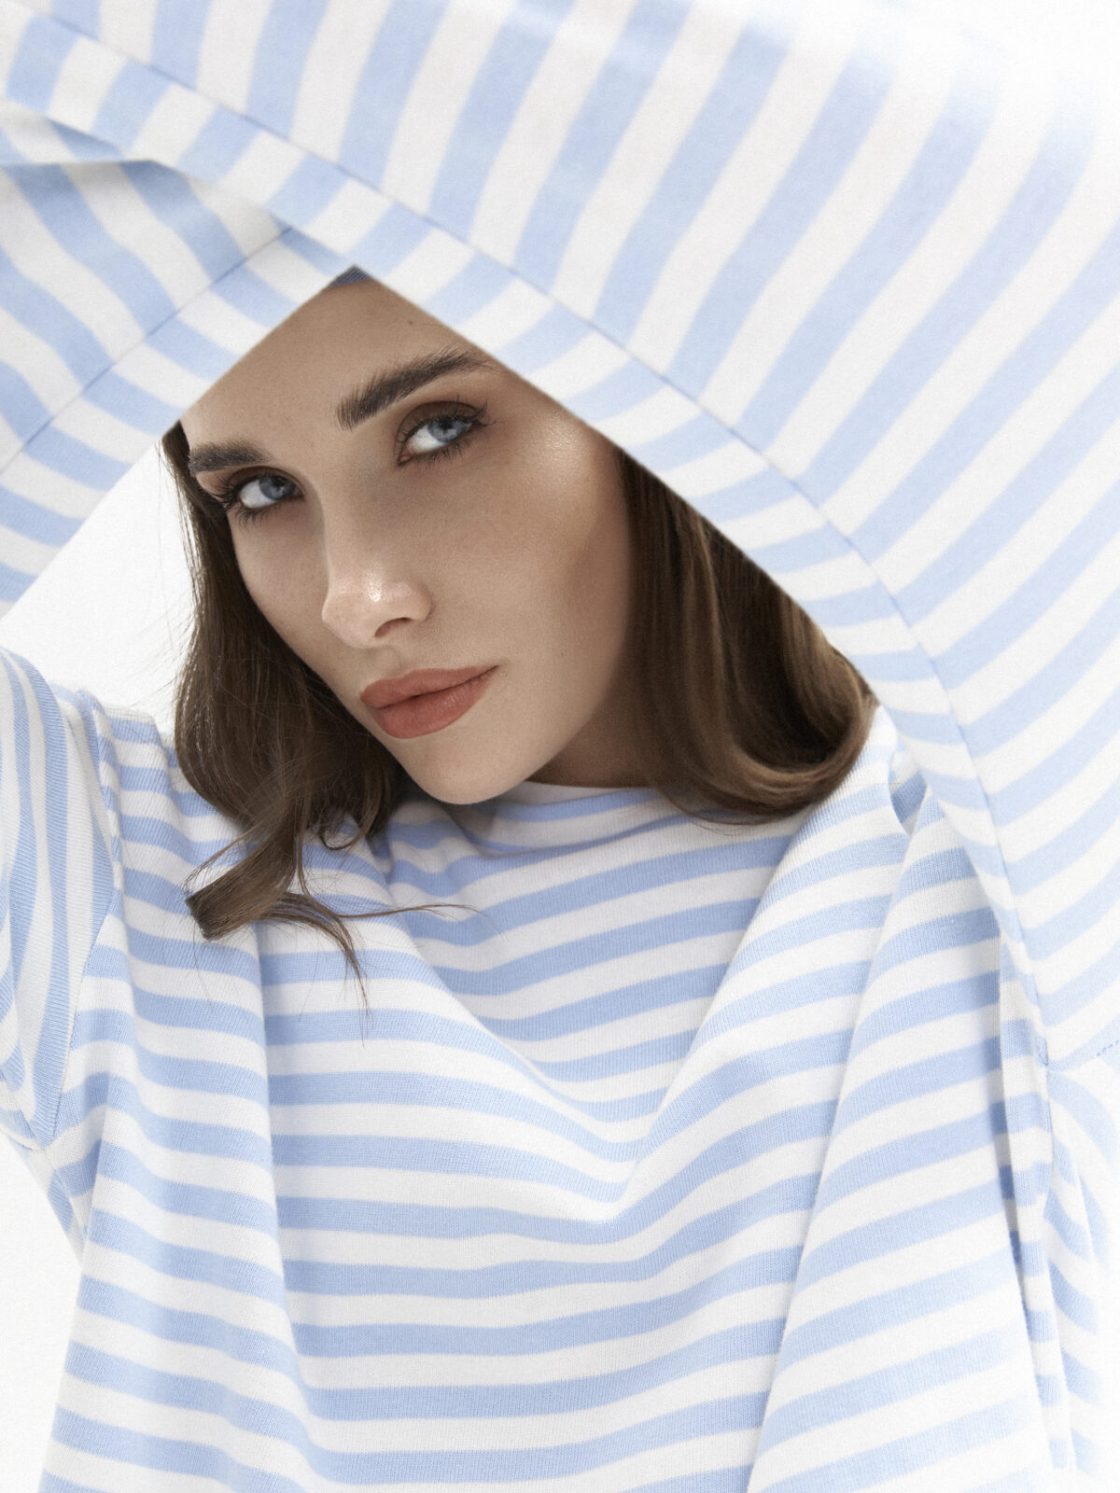 Привет романтике и свободе: российский бренд KSENIA KNYAZEVA представил летнюю коллекцию женской одежды 202415